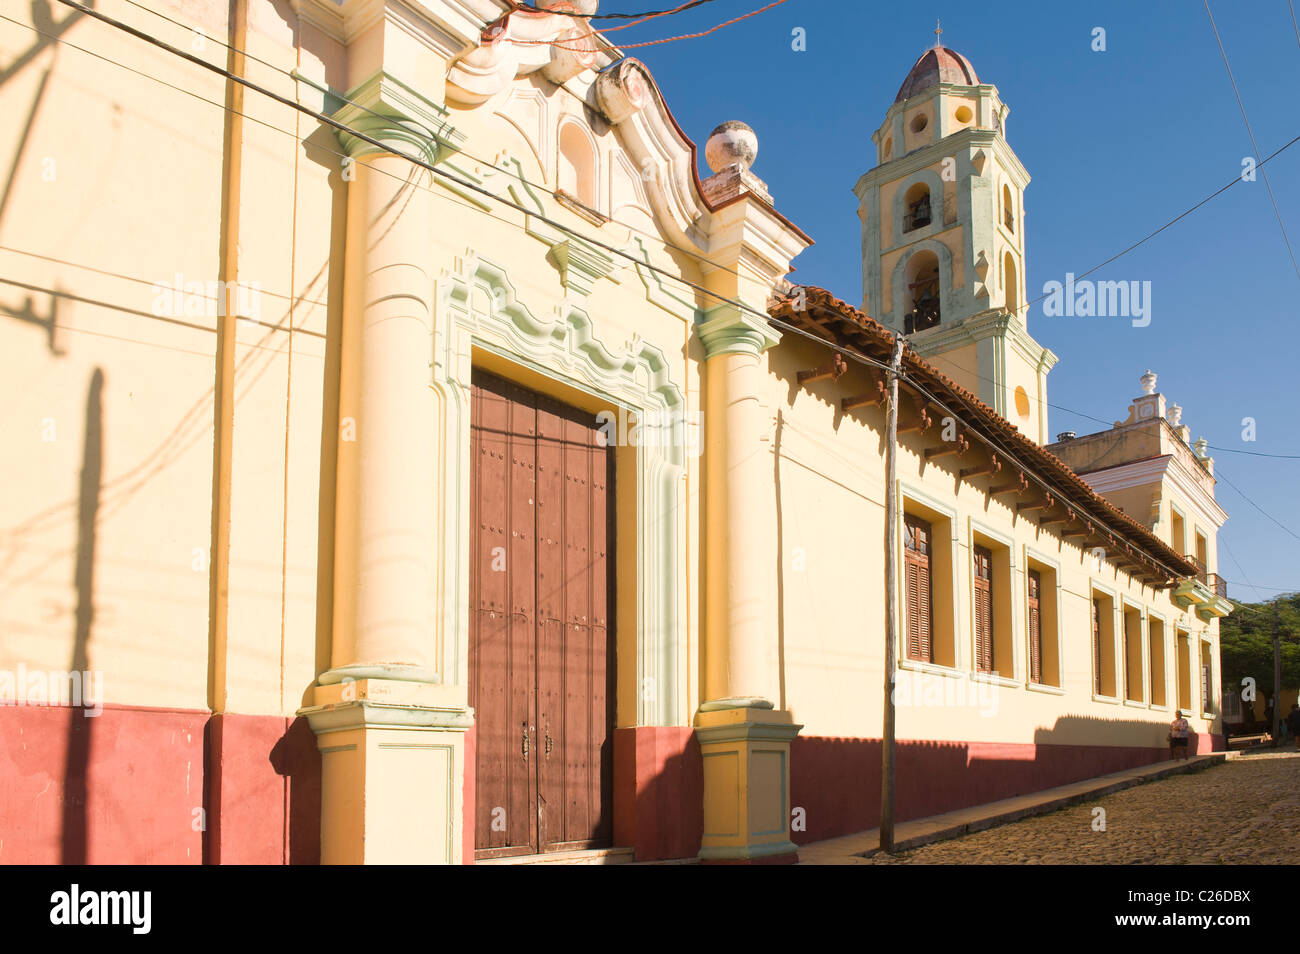 Convento de San Francisco de Asis, Trinidad, Cuba Stock Photo